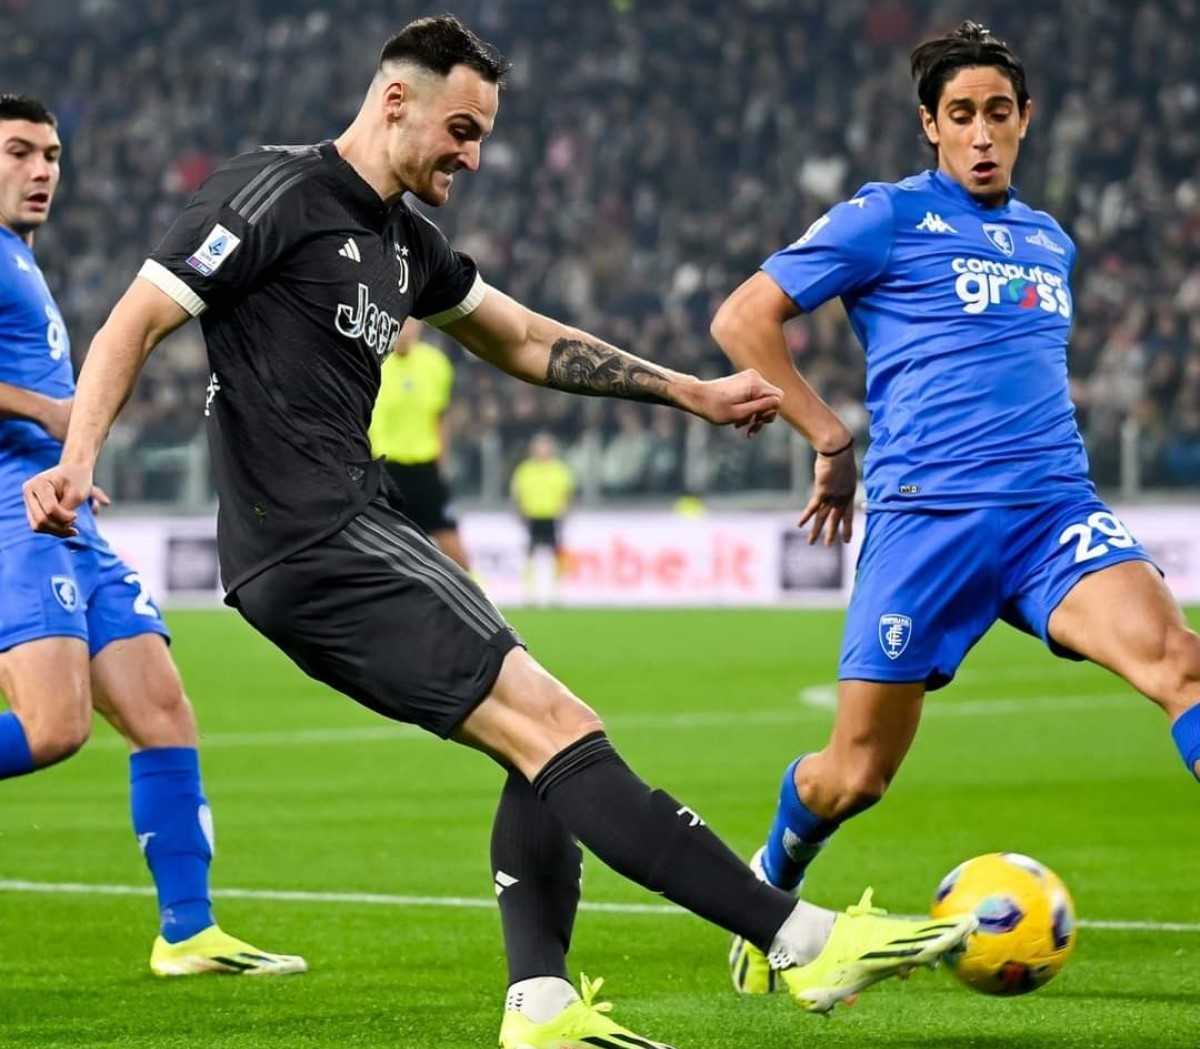 Juventus-Empoli (1-1): analisi tattica e considerazioni